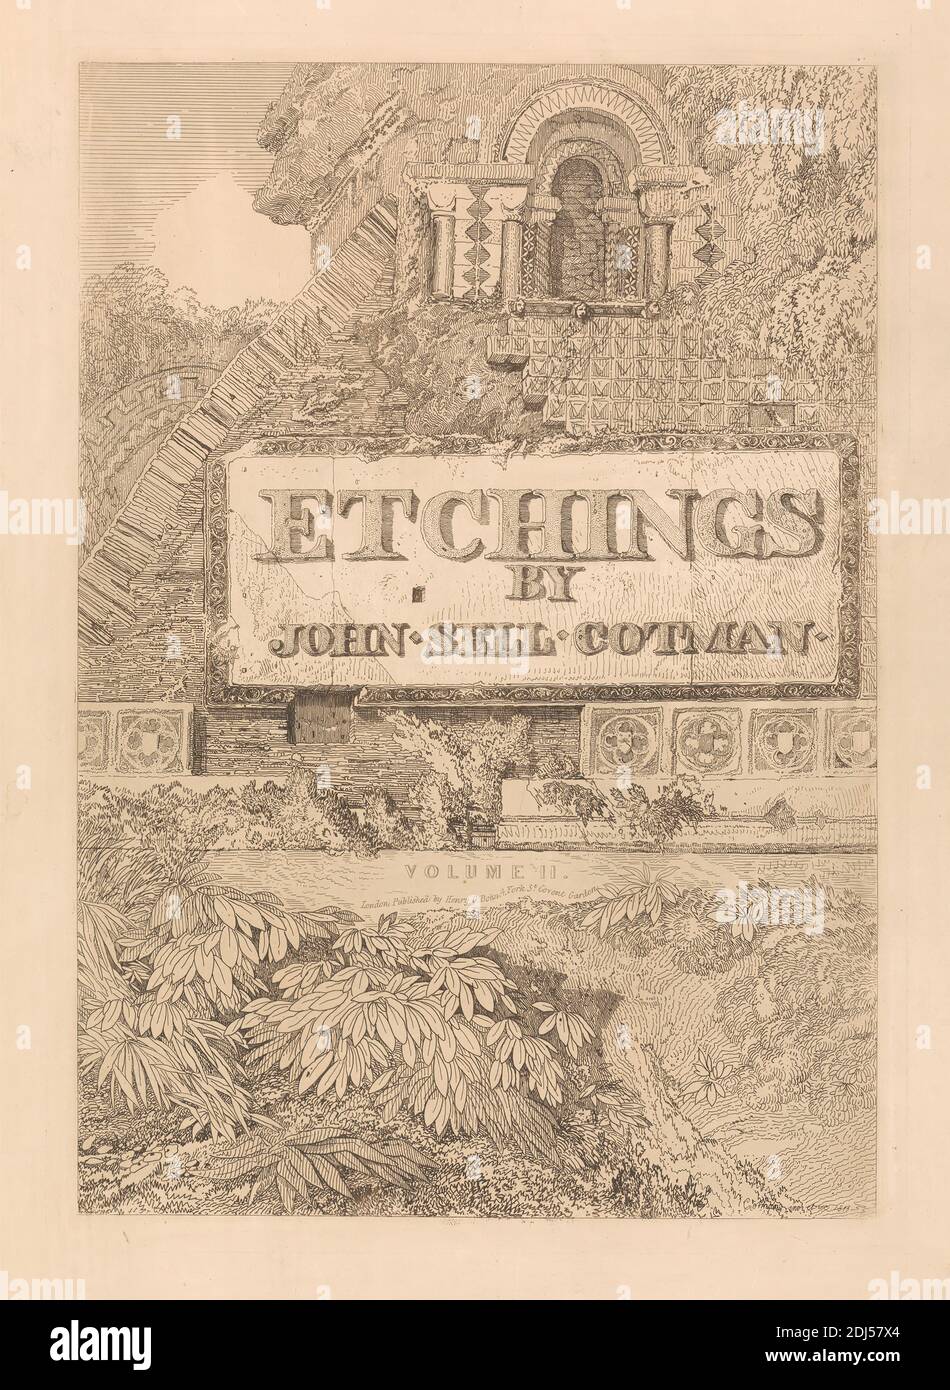 Incisioni di John Sell Cotman, Volume II, Stampa realizzata da John Sell Cotman, 1782–1842, inglese, After John Sell Cotman, 1782–1842, inglese, pubblicato da Henry George Bohn, 1795/6–1884, inglese, 1811, incisione su carta spessa, leggermente testurizzata, in wove beige, foglio: 19 7/16 x 13 3/4 pollici (49.3 x 35 cm), piastra: 14 7/16 x 10 1/16 pollici (36.7 x 25.5 cm), e immagine: 14 1/8 x 9 3/4 pollici (35.8 x 24.8 cm), archi, soggetto architettonico, architettura, edificio, colonne (elementi architettonici), decorazioni, frontespizio (illustrazione), paesaggio, foglie, placca (oggetto piano), quatrefoli, arbusti, titolo Foto Stock